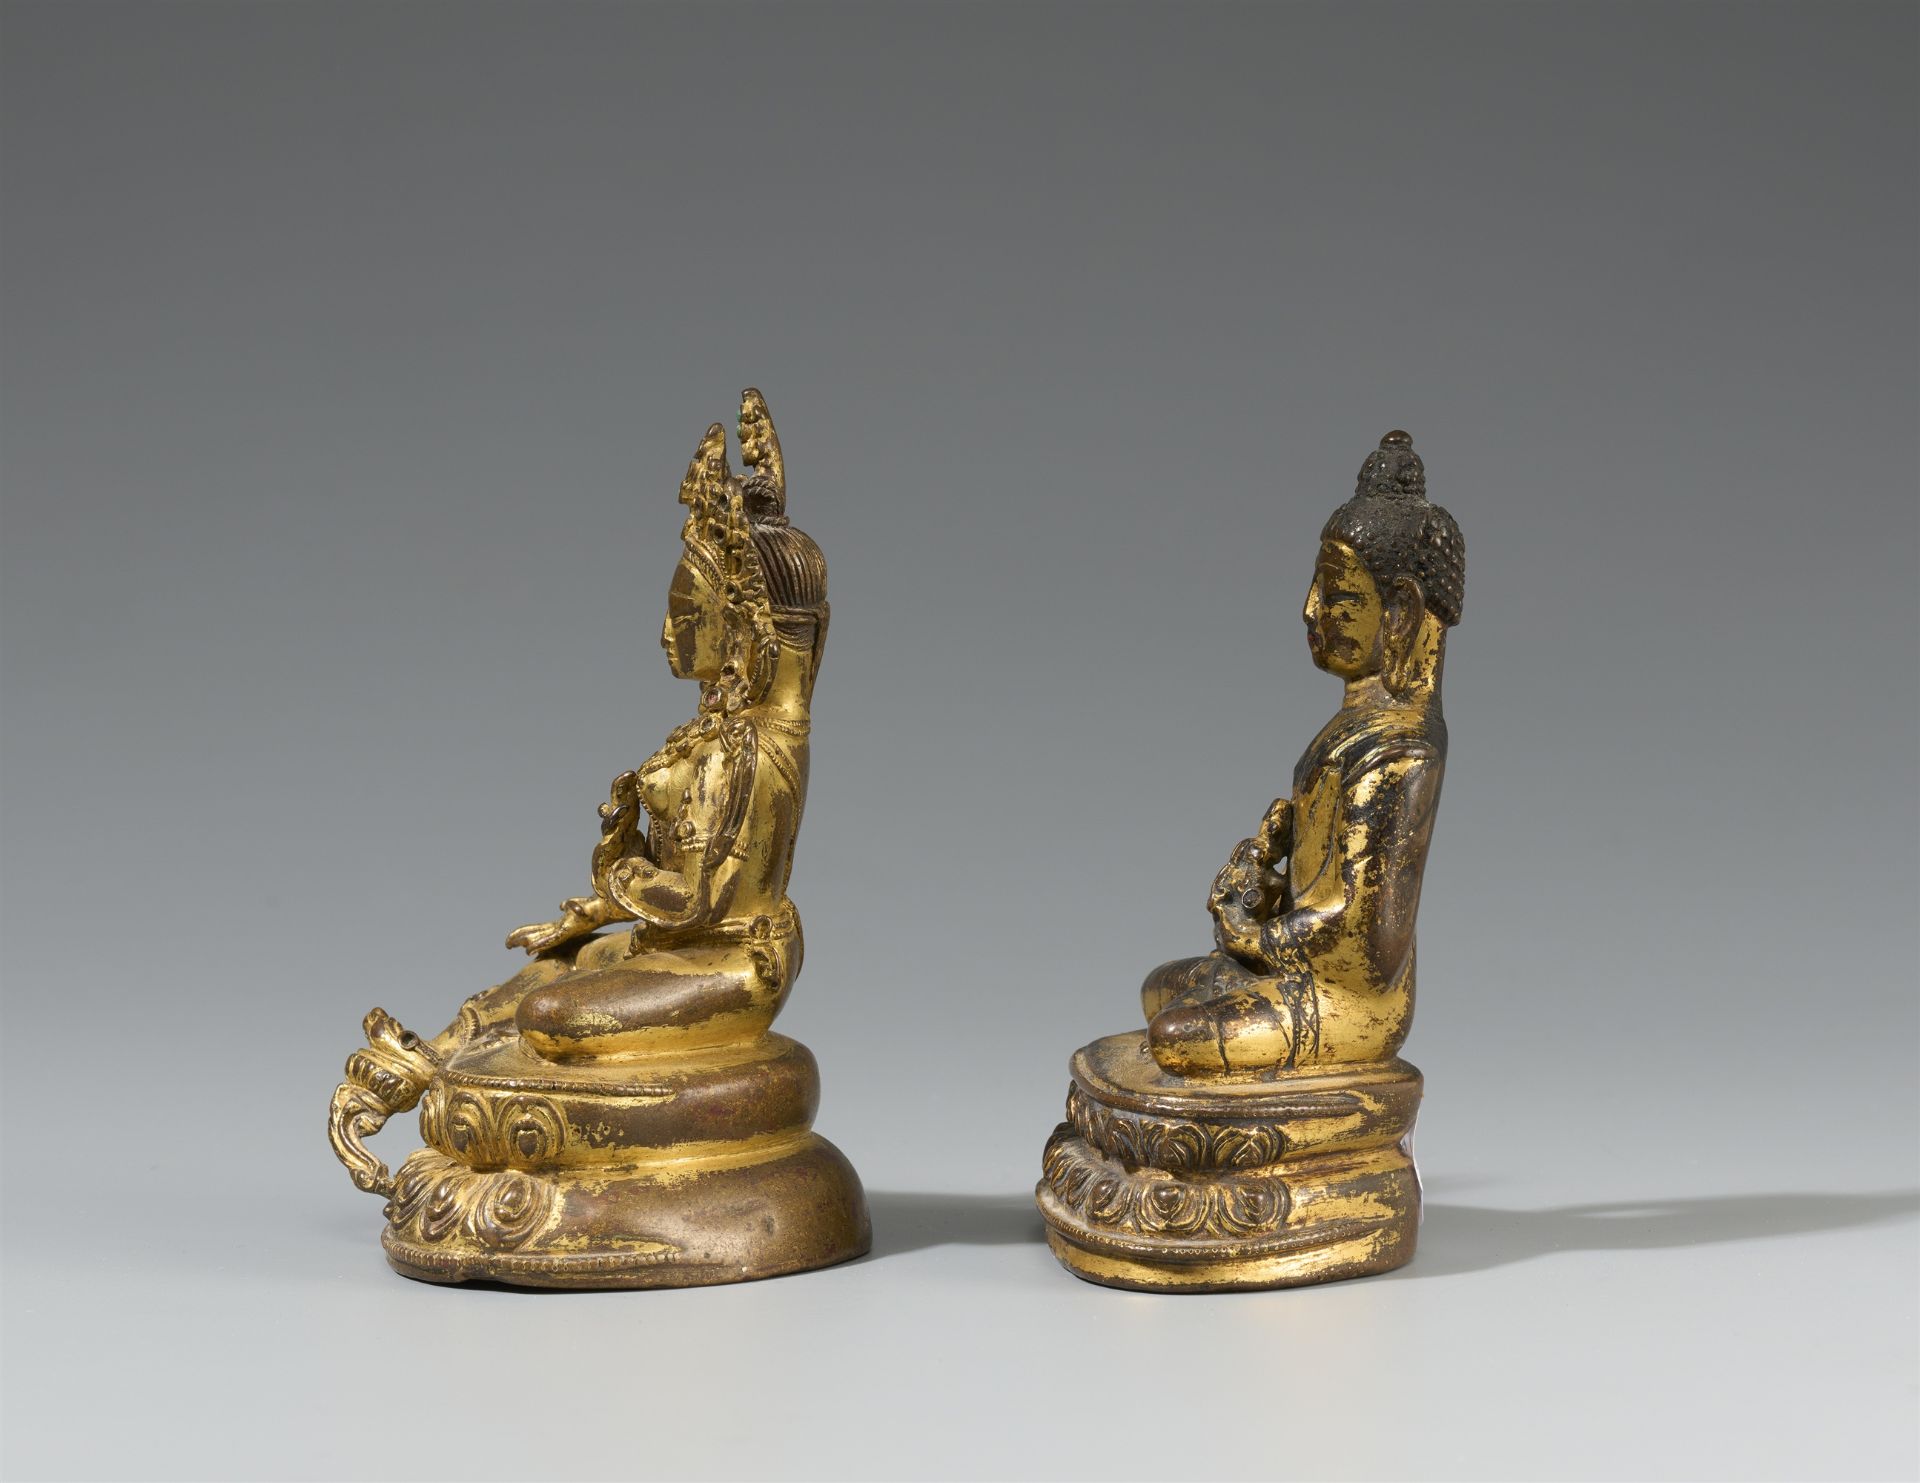 Figur des Buddha Shakyamuni und Figur der Shyamatara. Vergoldete Bronze. Tibet, 17. Jh. und 19. Jh. - Bild 4 aus 4